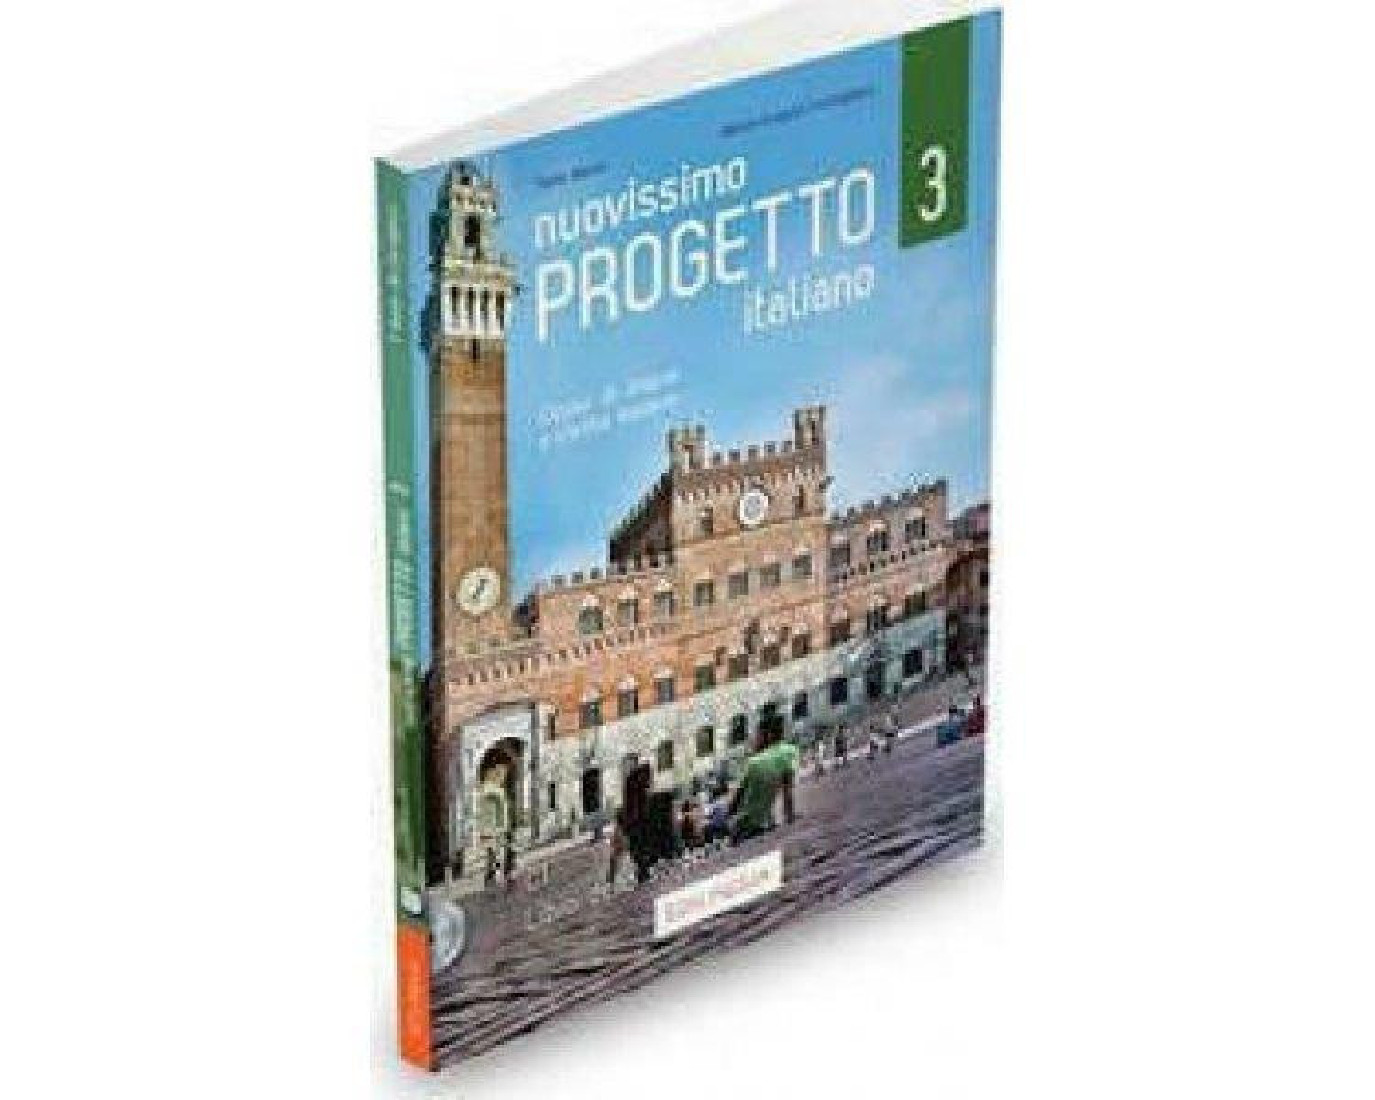 NUOVISSIMO PROGETTO ITALIANO 3 ELEMENTARE STUDENTE (+ DVD)